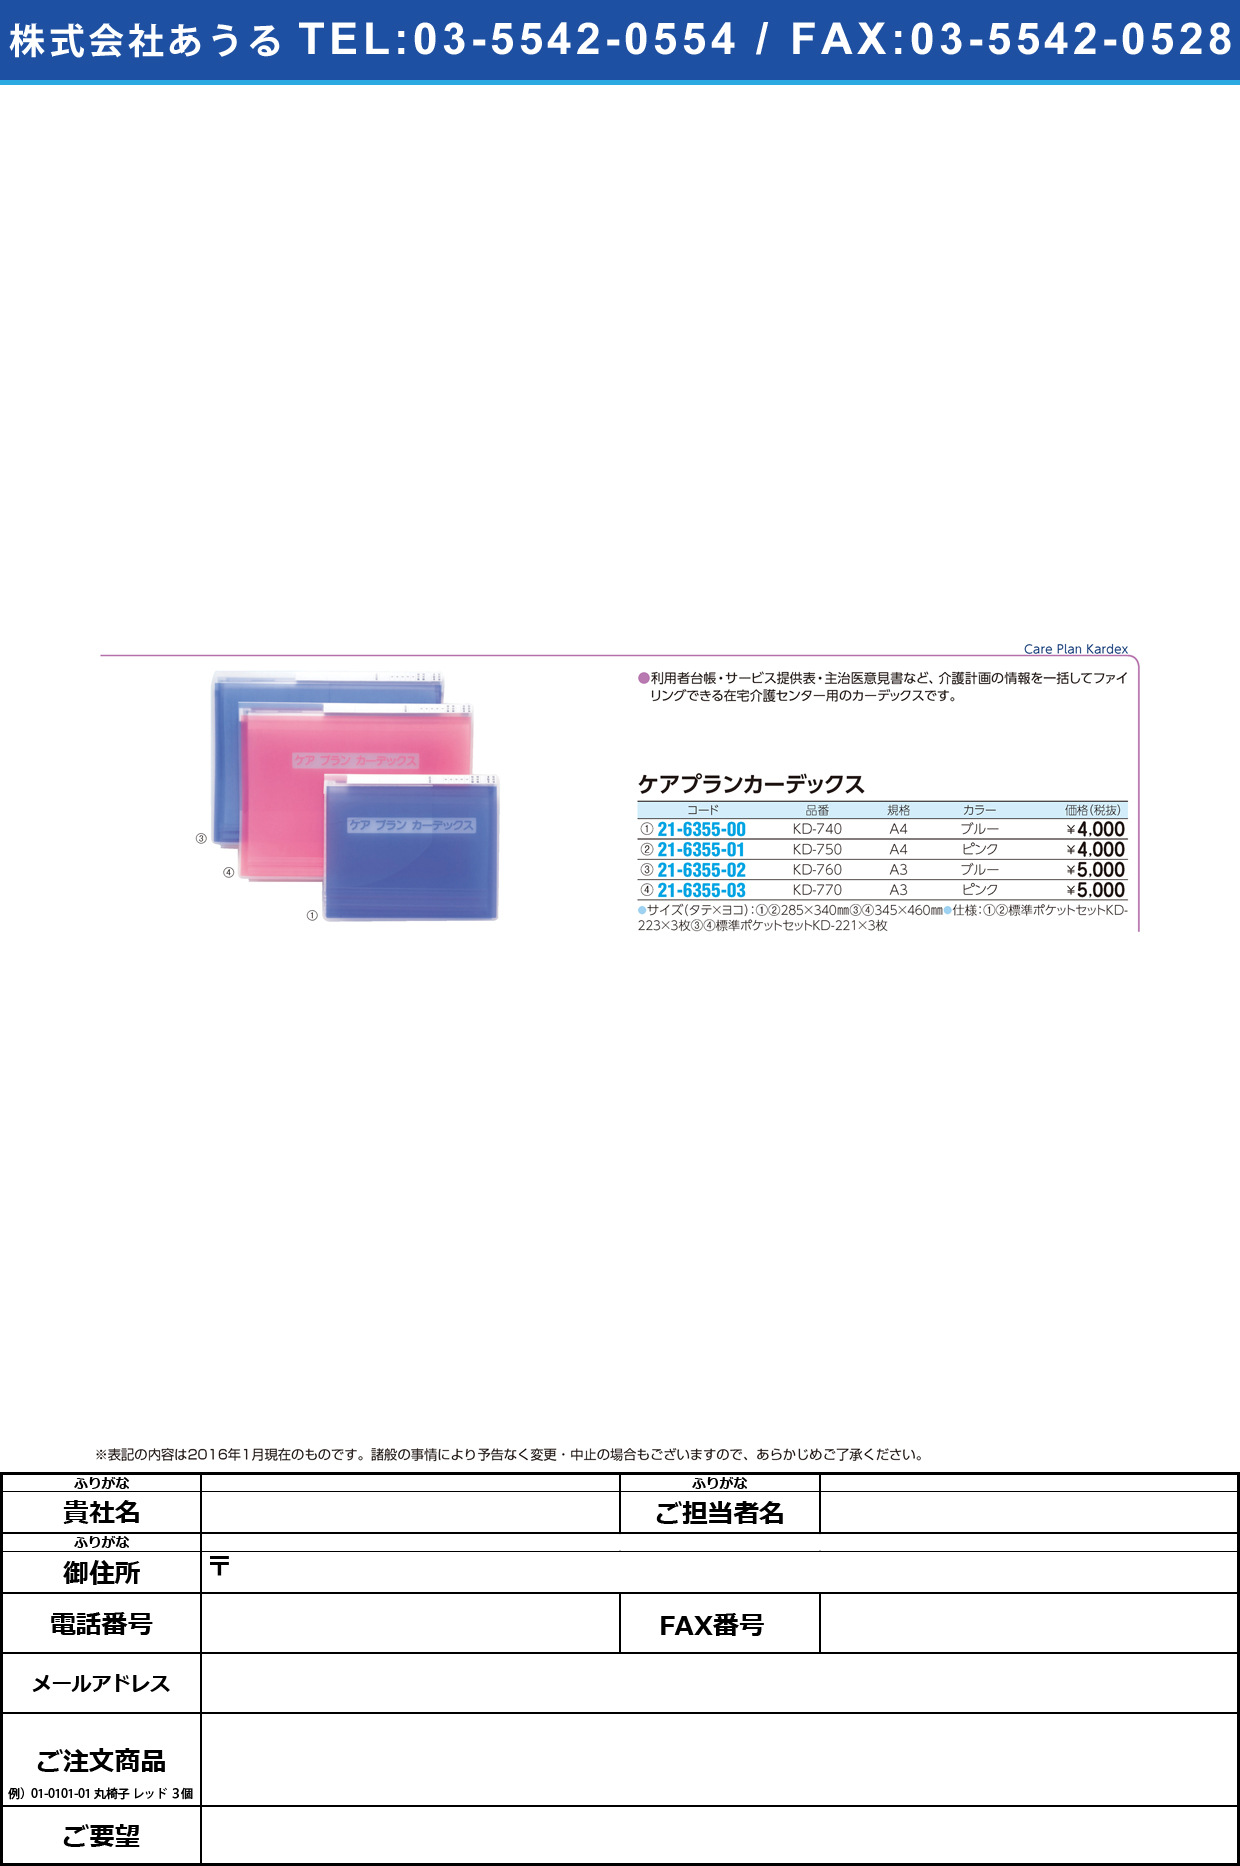 (21-6355-03)ケアプランカーデックス ｹｱﾌﾟﾗﾝｶｰﾃﾞｯｸｽ KD-770(A3)ﾋﾟﾝｸ【1冊単位】【2016年カタログ商品】